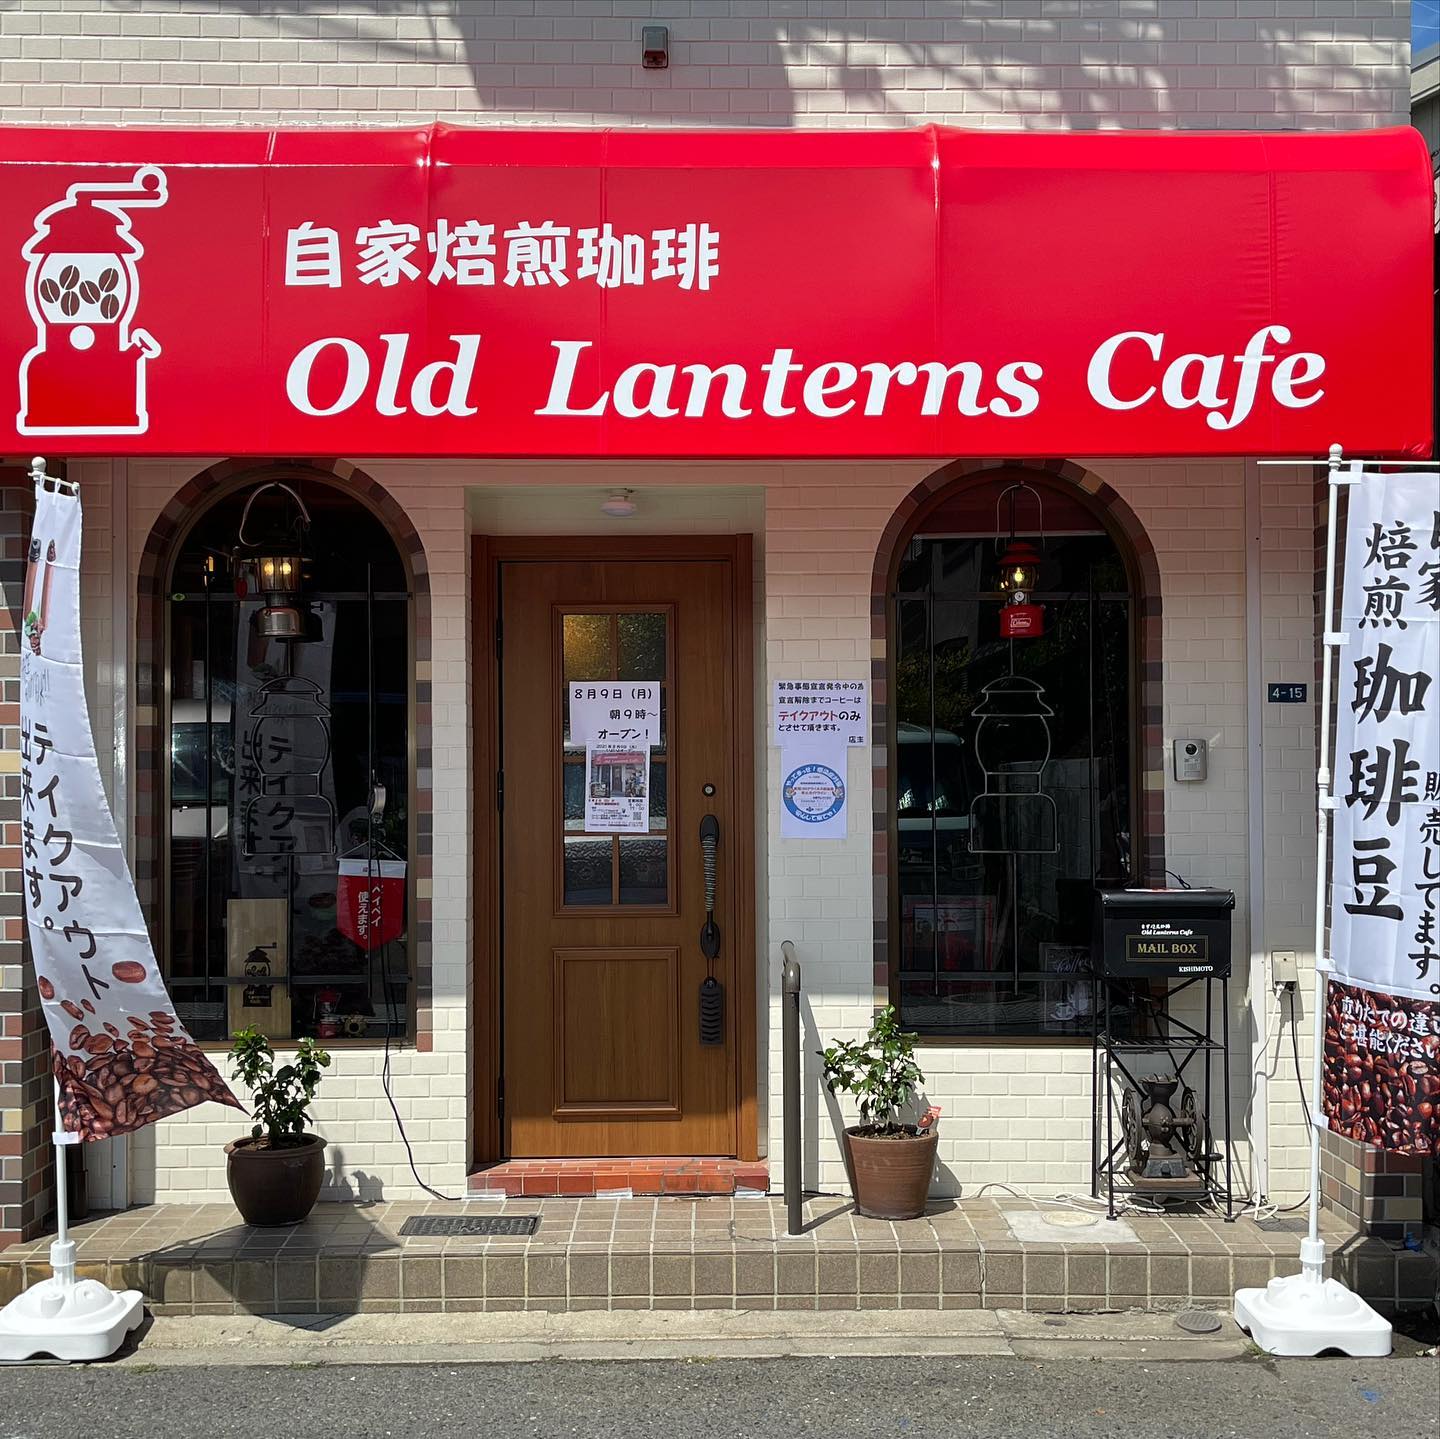   コールマンスタイルの移動コーヒースタンド「オールドランタンズカフェ」店舗オープン